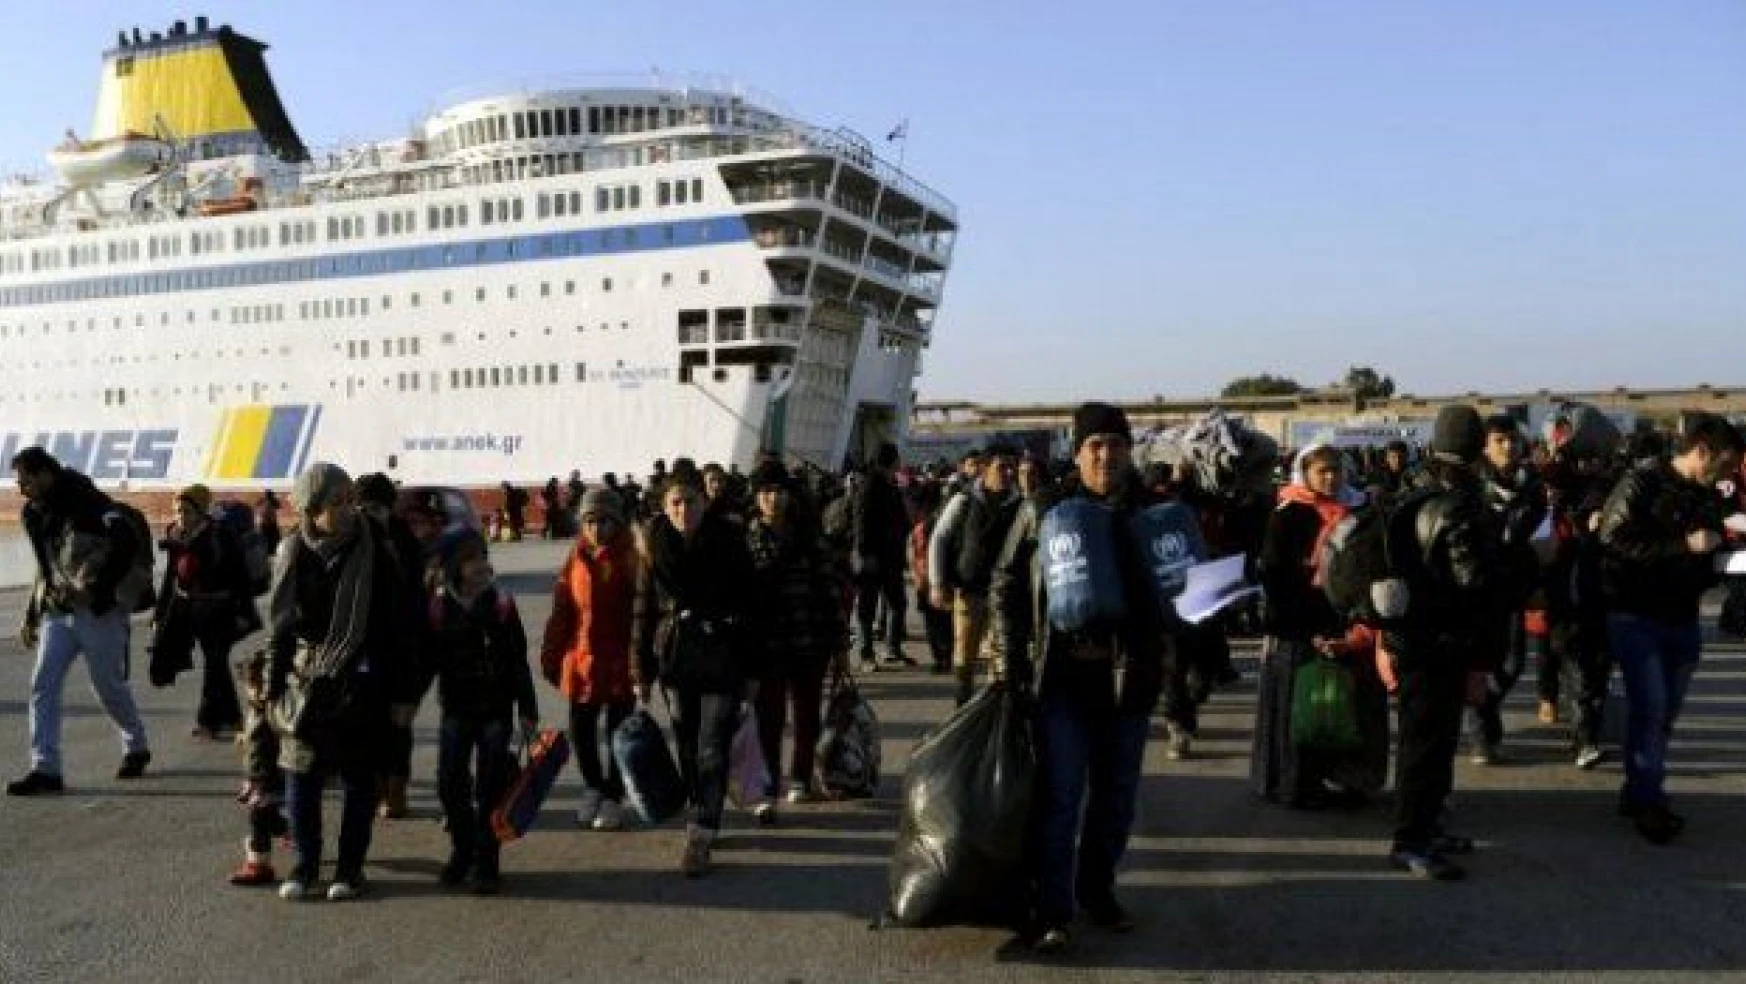 Suriye'deki savaşı bitirmeyi düşünmeyen Avrupa, sığınmacıları gemilerle Türkiye'ye yollayacak